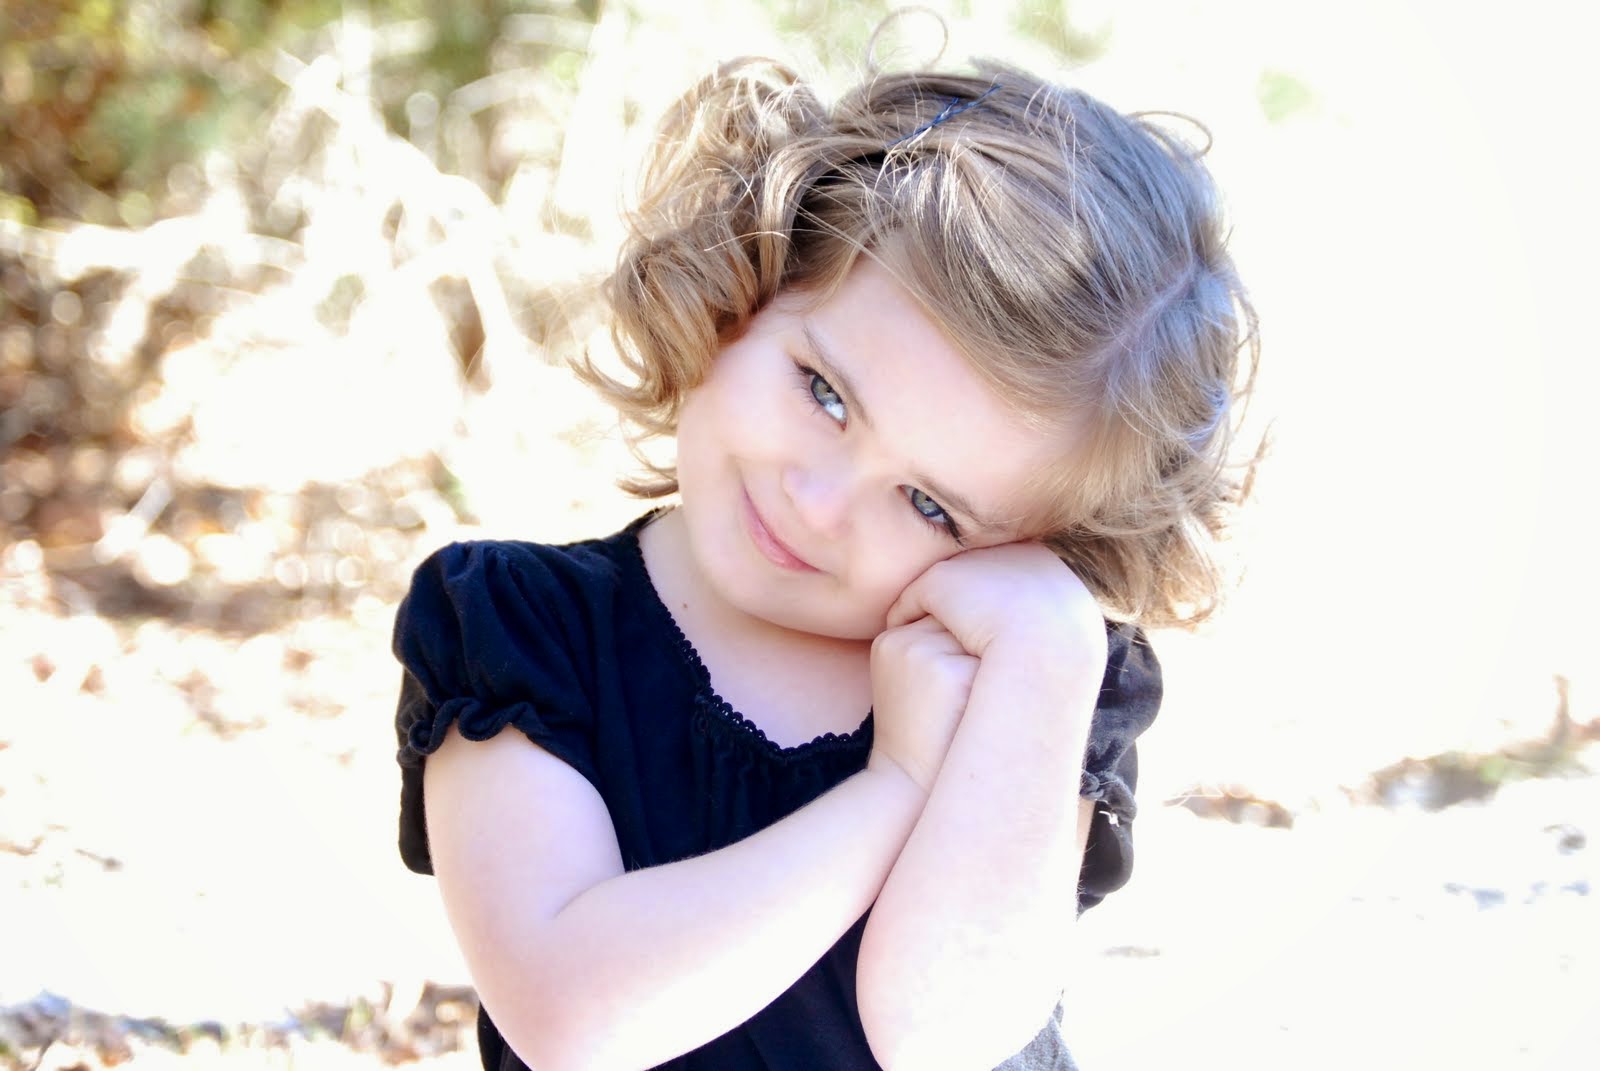 Foto Anak Kecil Cantik Lucu Imut Terbaru DP BBM Update